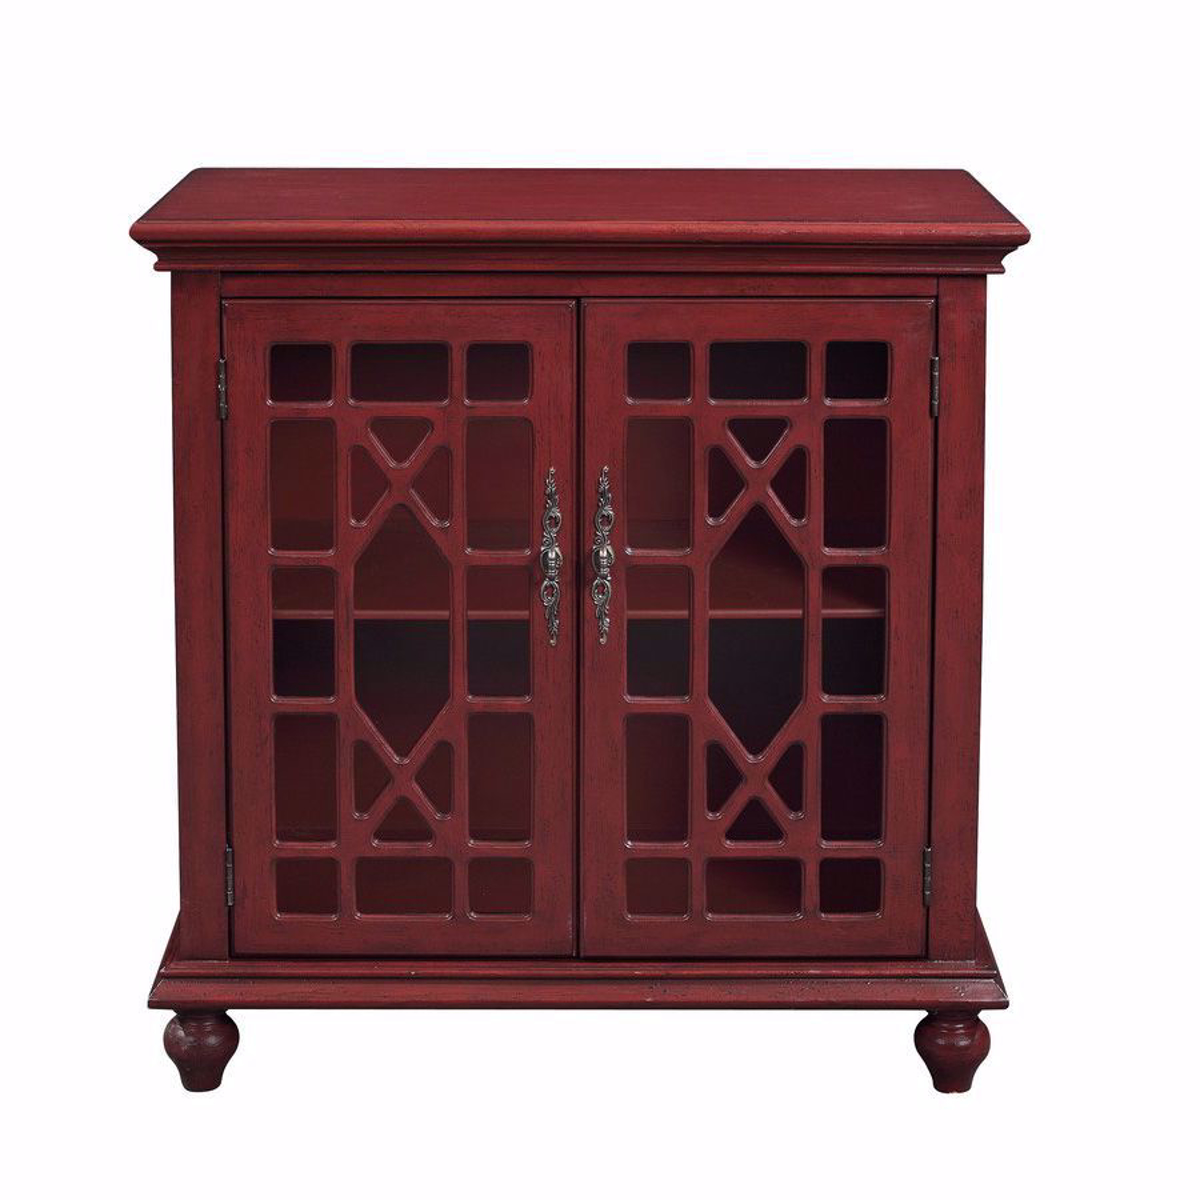 Picture of Esnon Texture Red 2 Door Cabinet